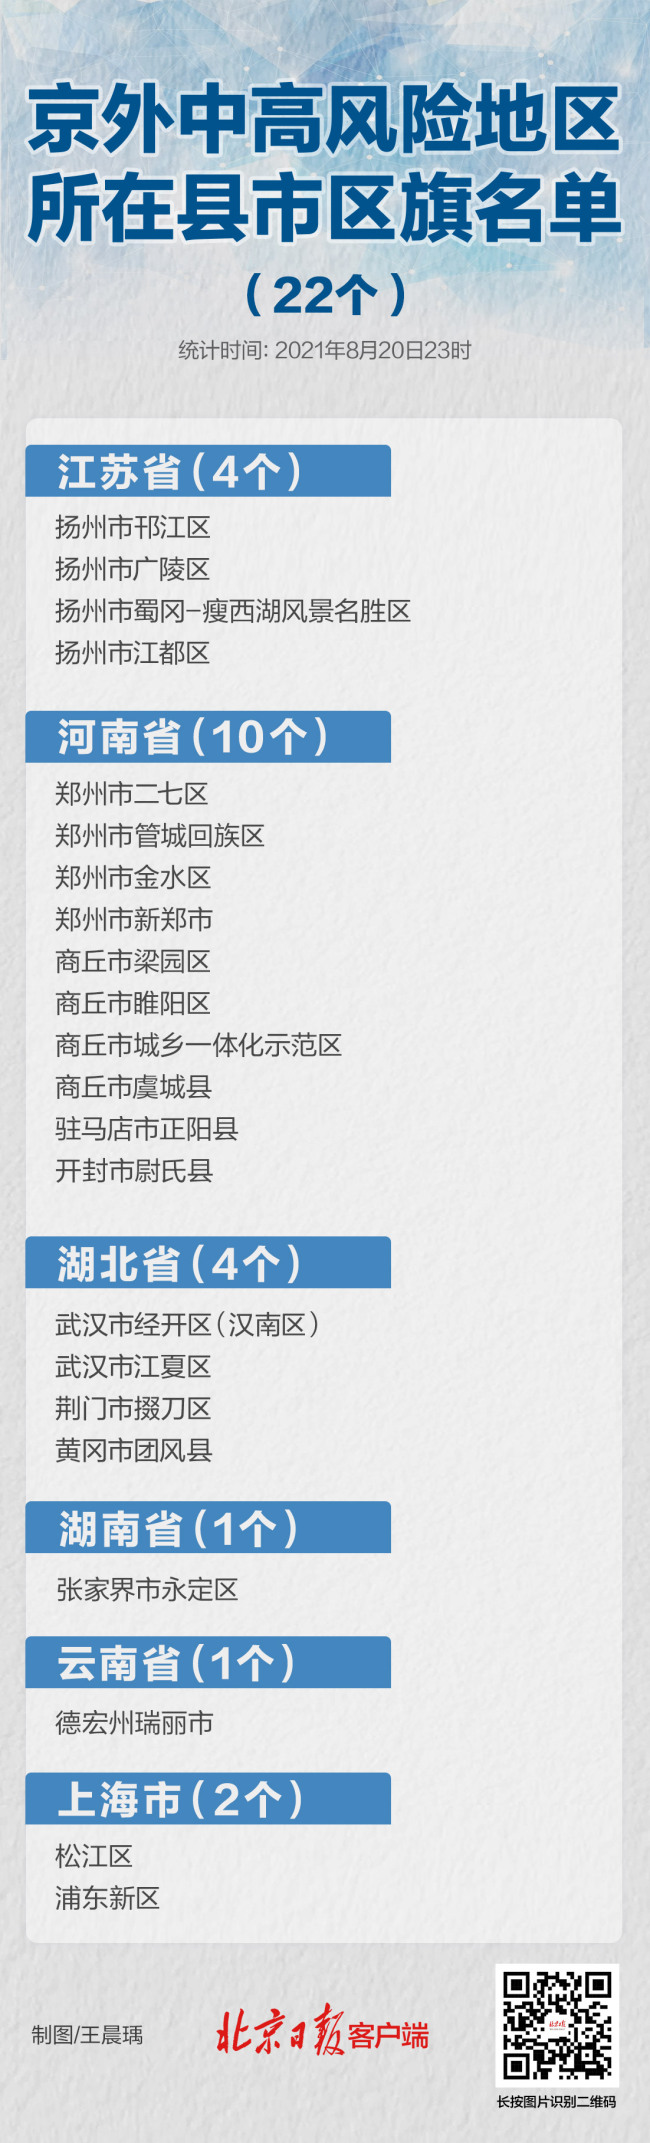 上海+1，扬州-1，暂缓进京的县市区还有22个